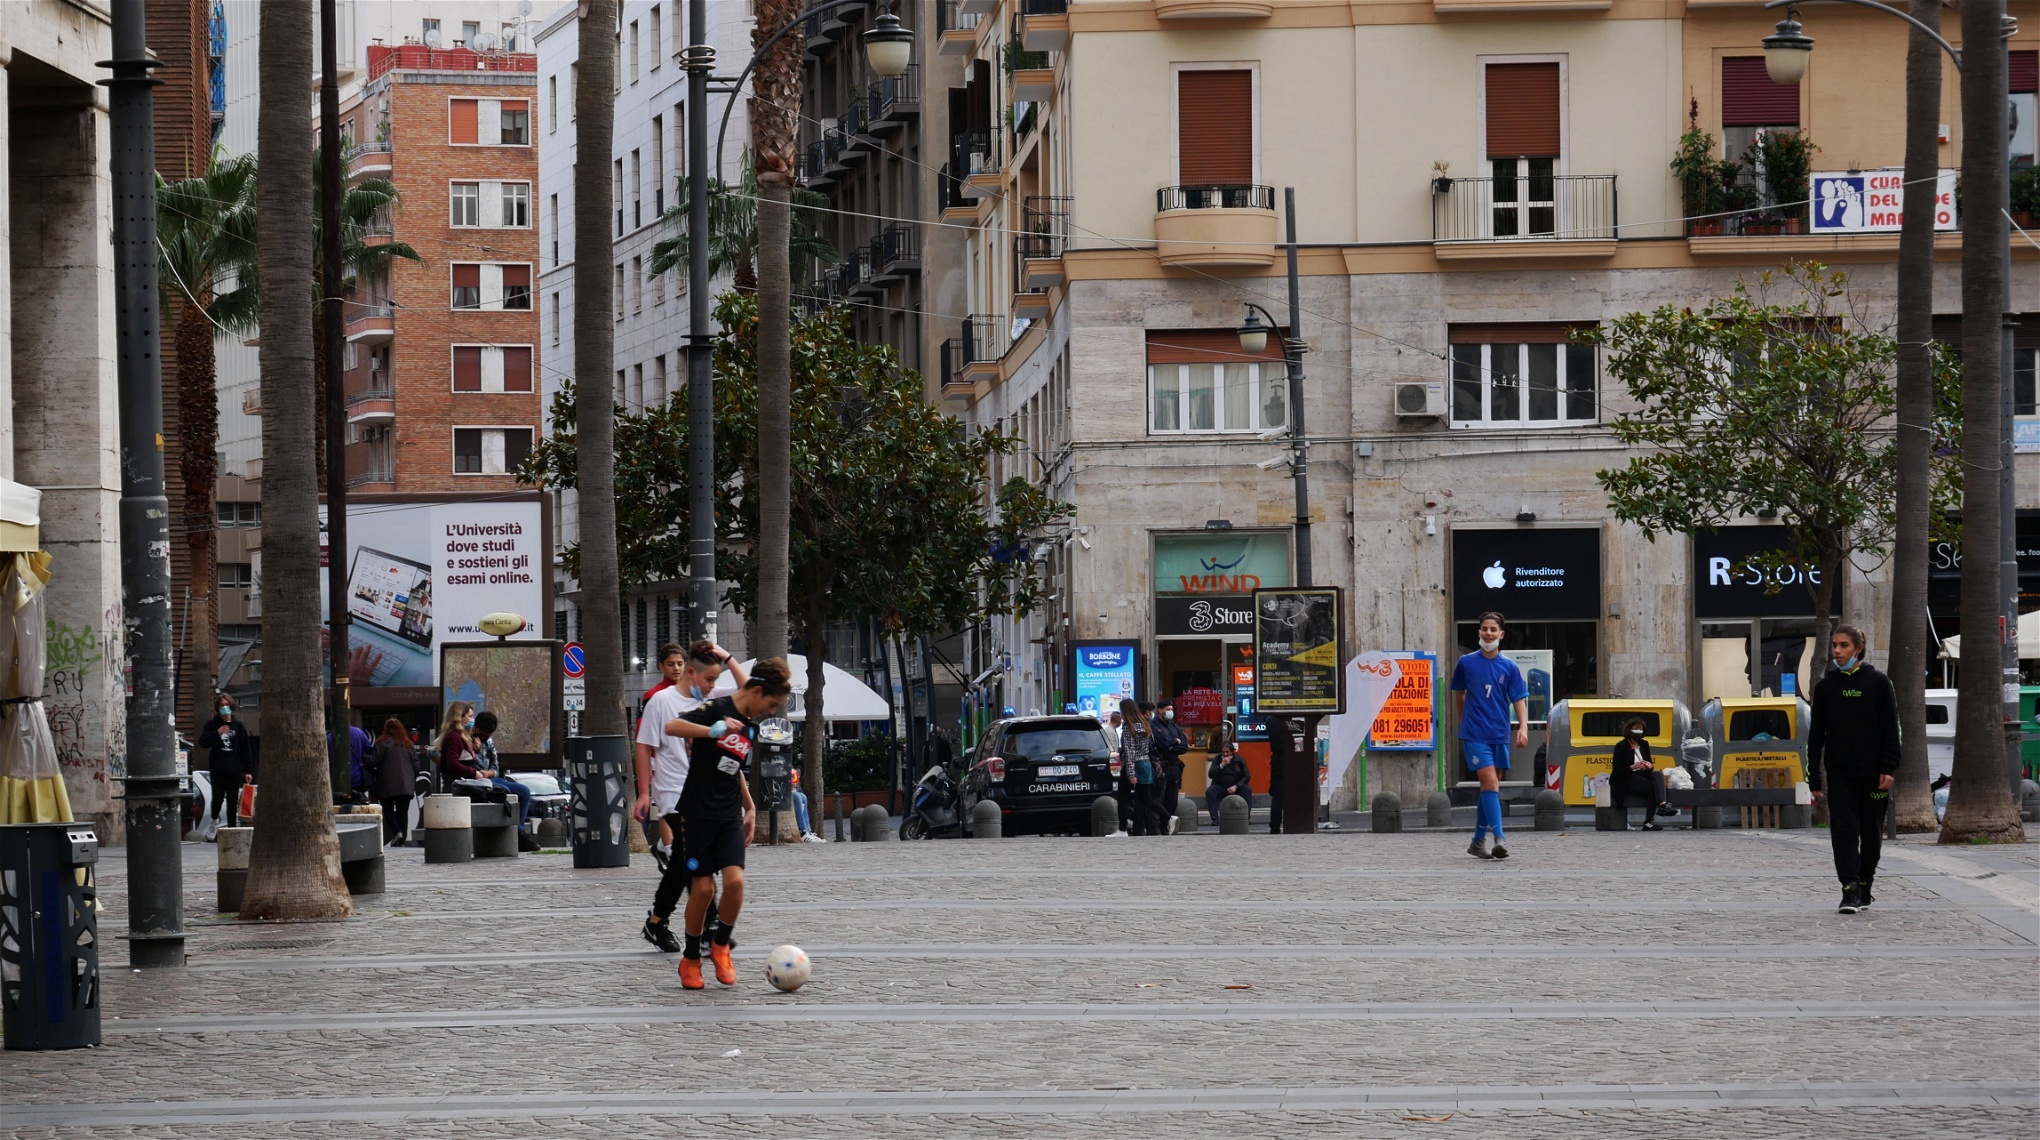 Foto: Giuliano EspositoUngdomar spelar fotboll på Piazza Carita. Det är obligatoriskt för alla att bära munskydd utomhus.